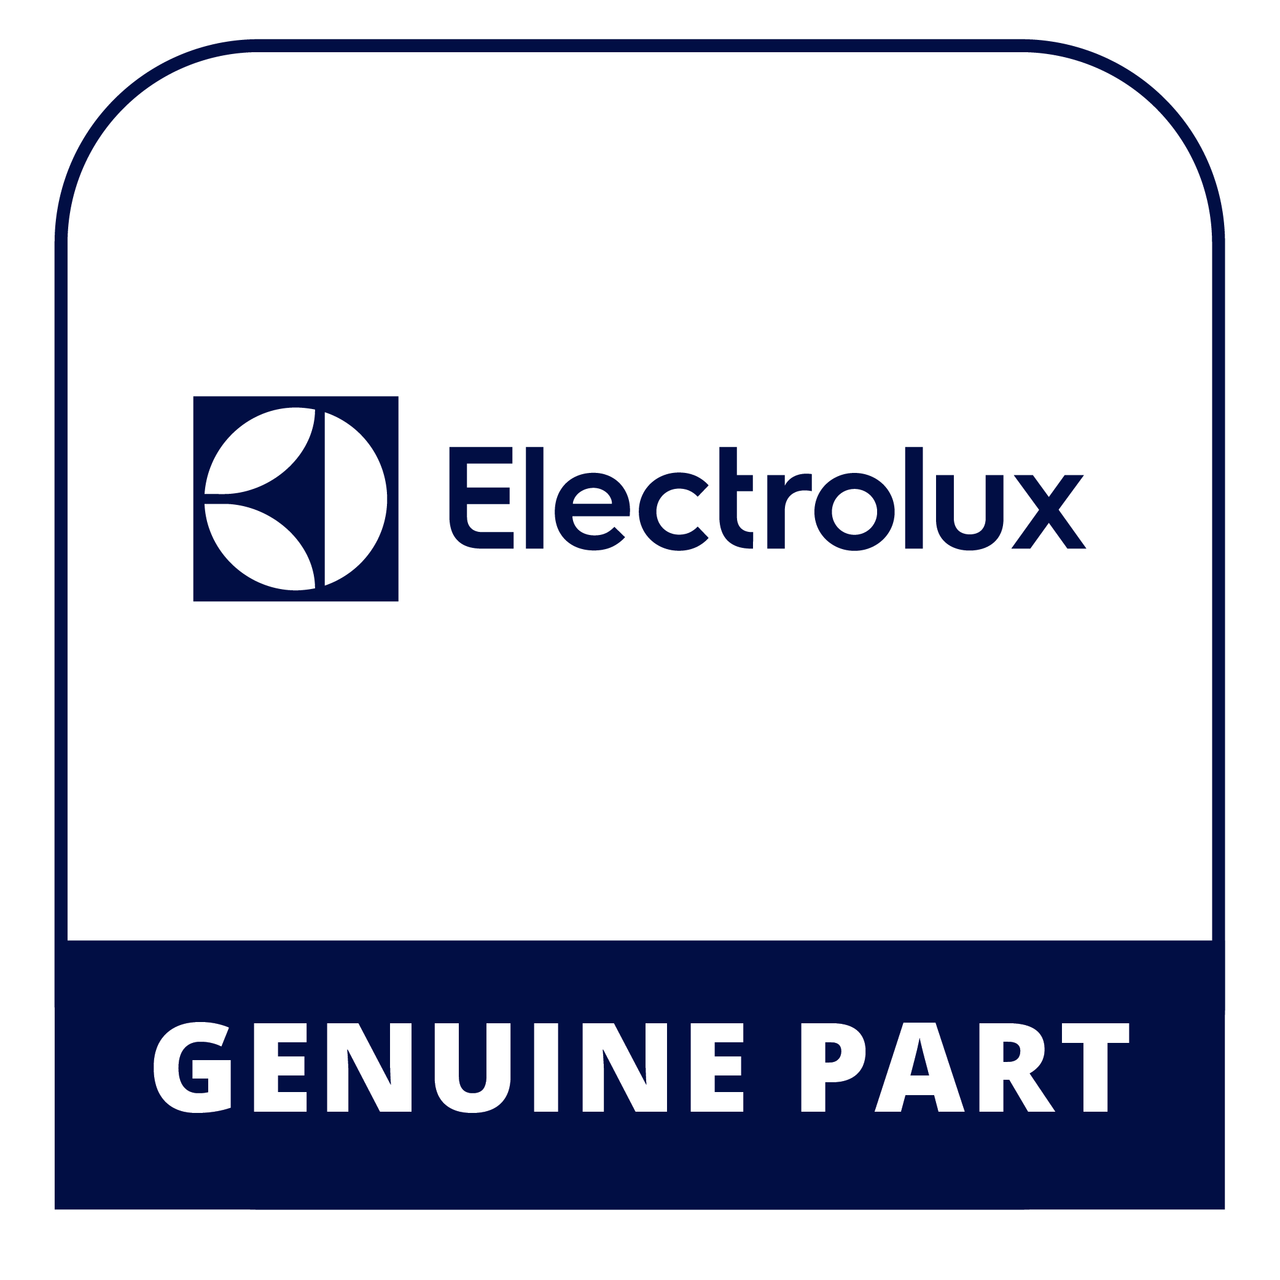 Frigidaire - Electrolux 240367608 Trim-Shelf - Genuine Electrolux Part